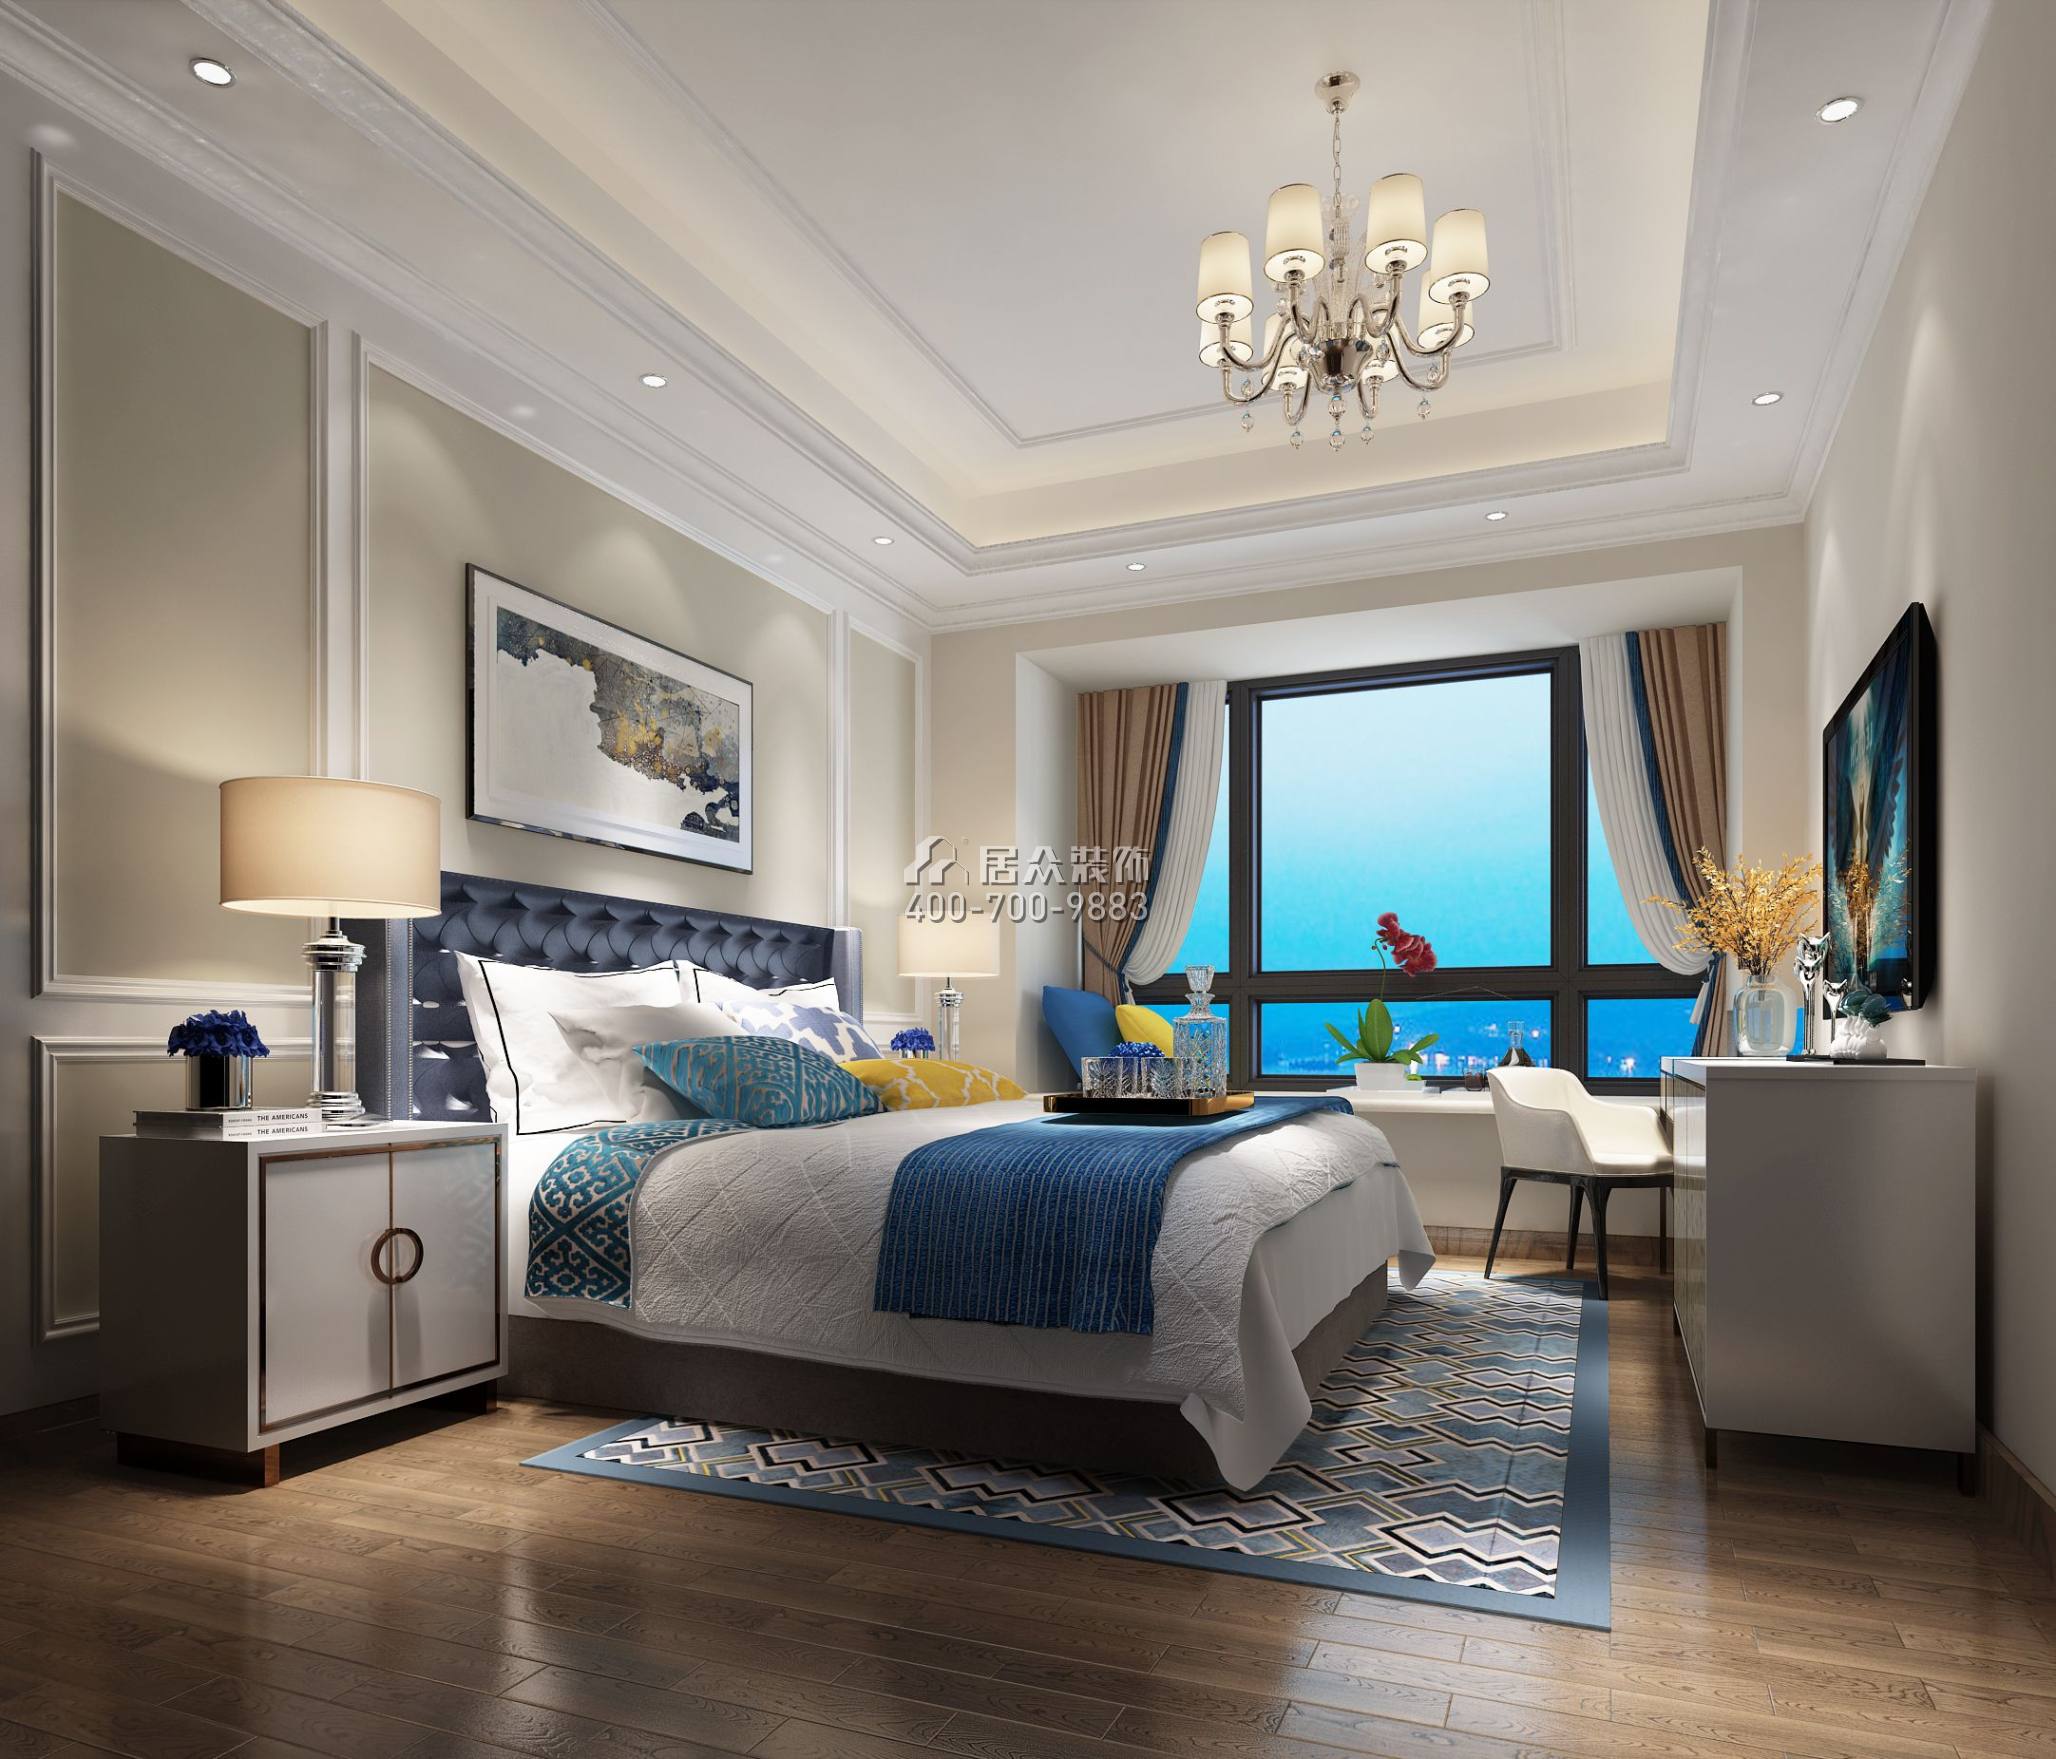 保利天汇120平方米欧式风格平层户型卧室装修效果图